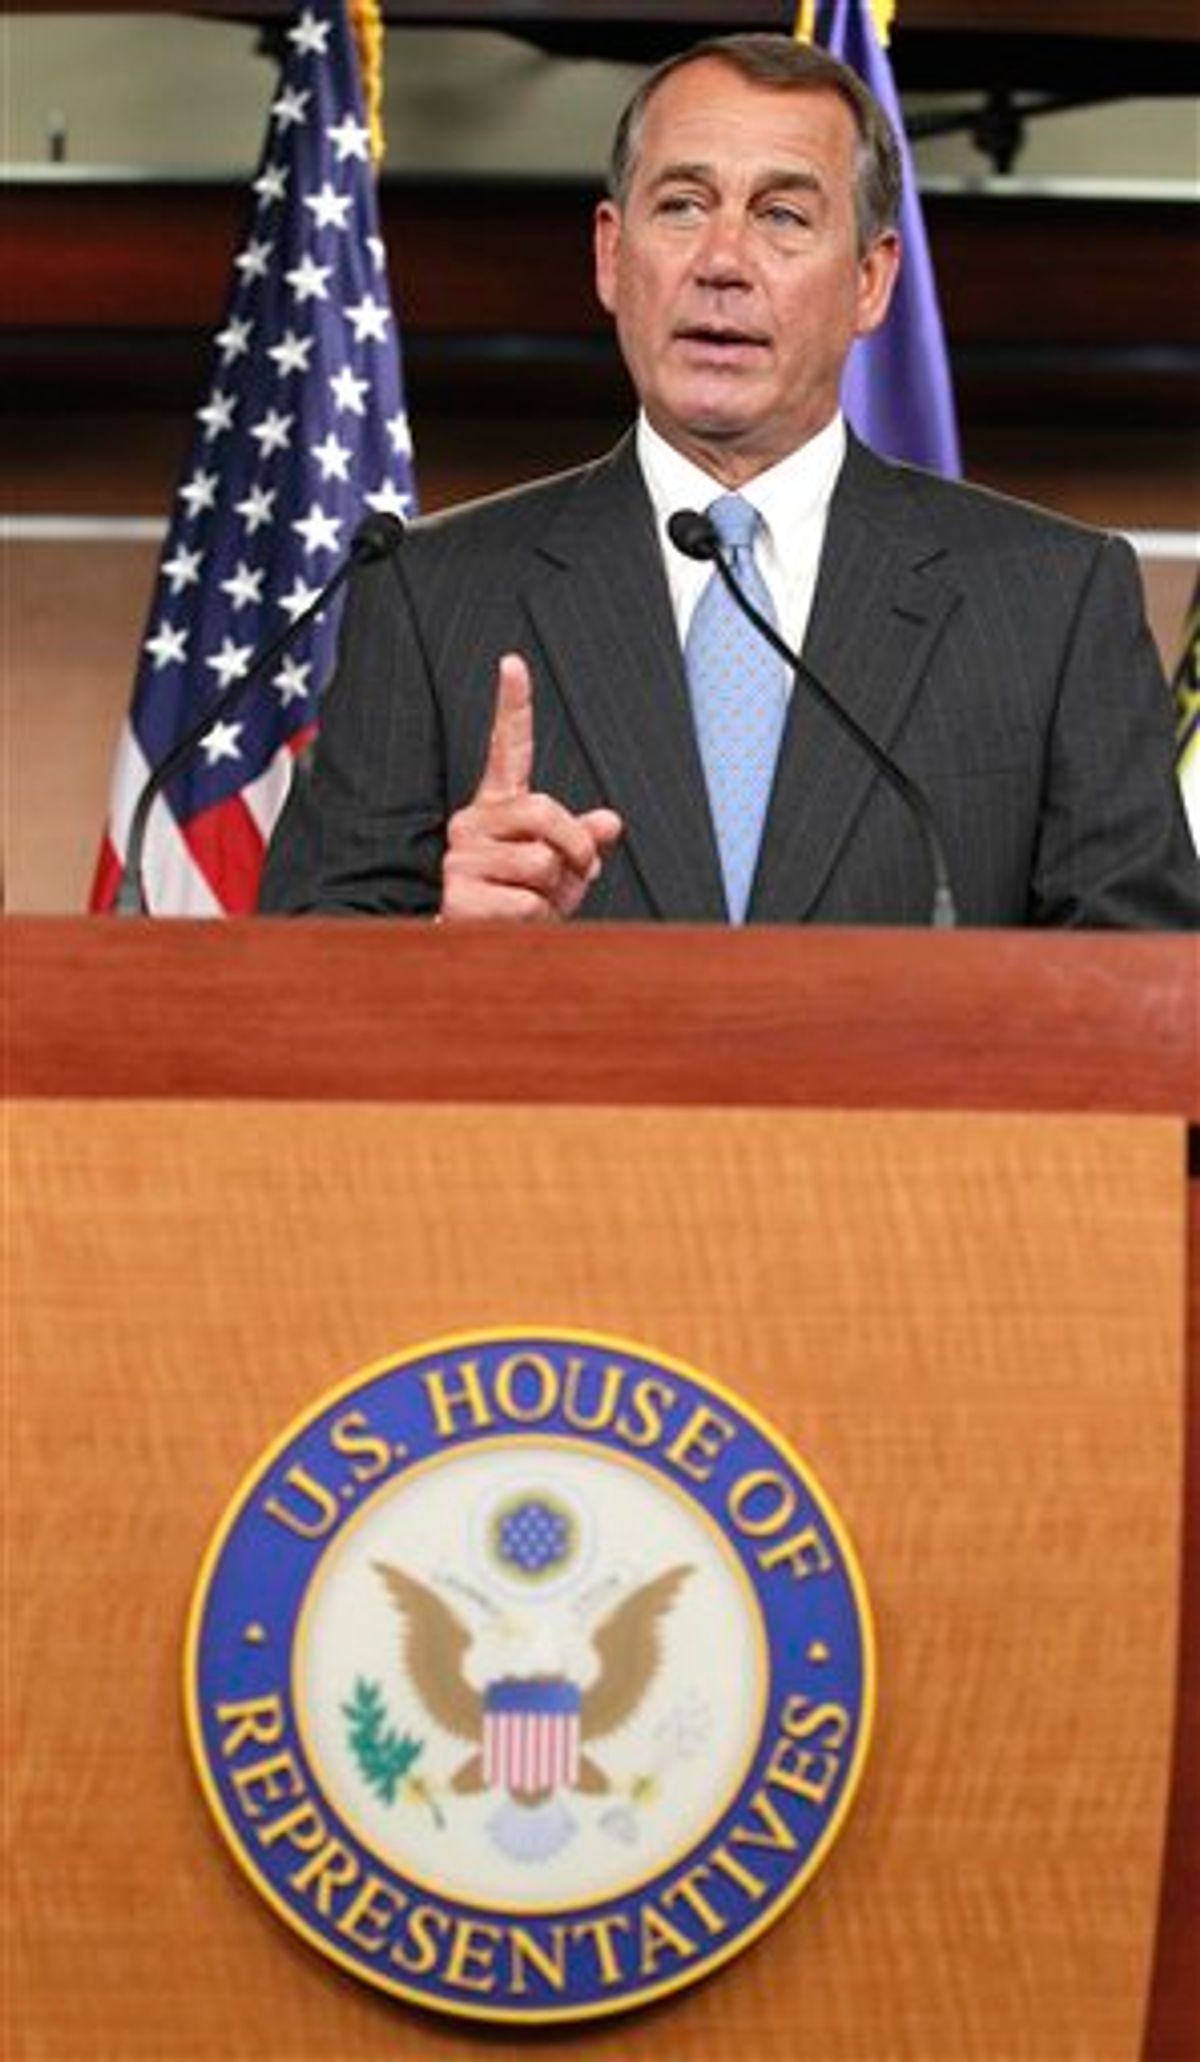 House Speaker John Boehner of Ohio, speaks to the media on Capitol Hill in Washington, Thursday, Jan. 6, 2011. (AP Photo/Alex Brandon) (AP)